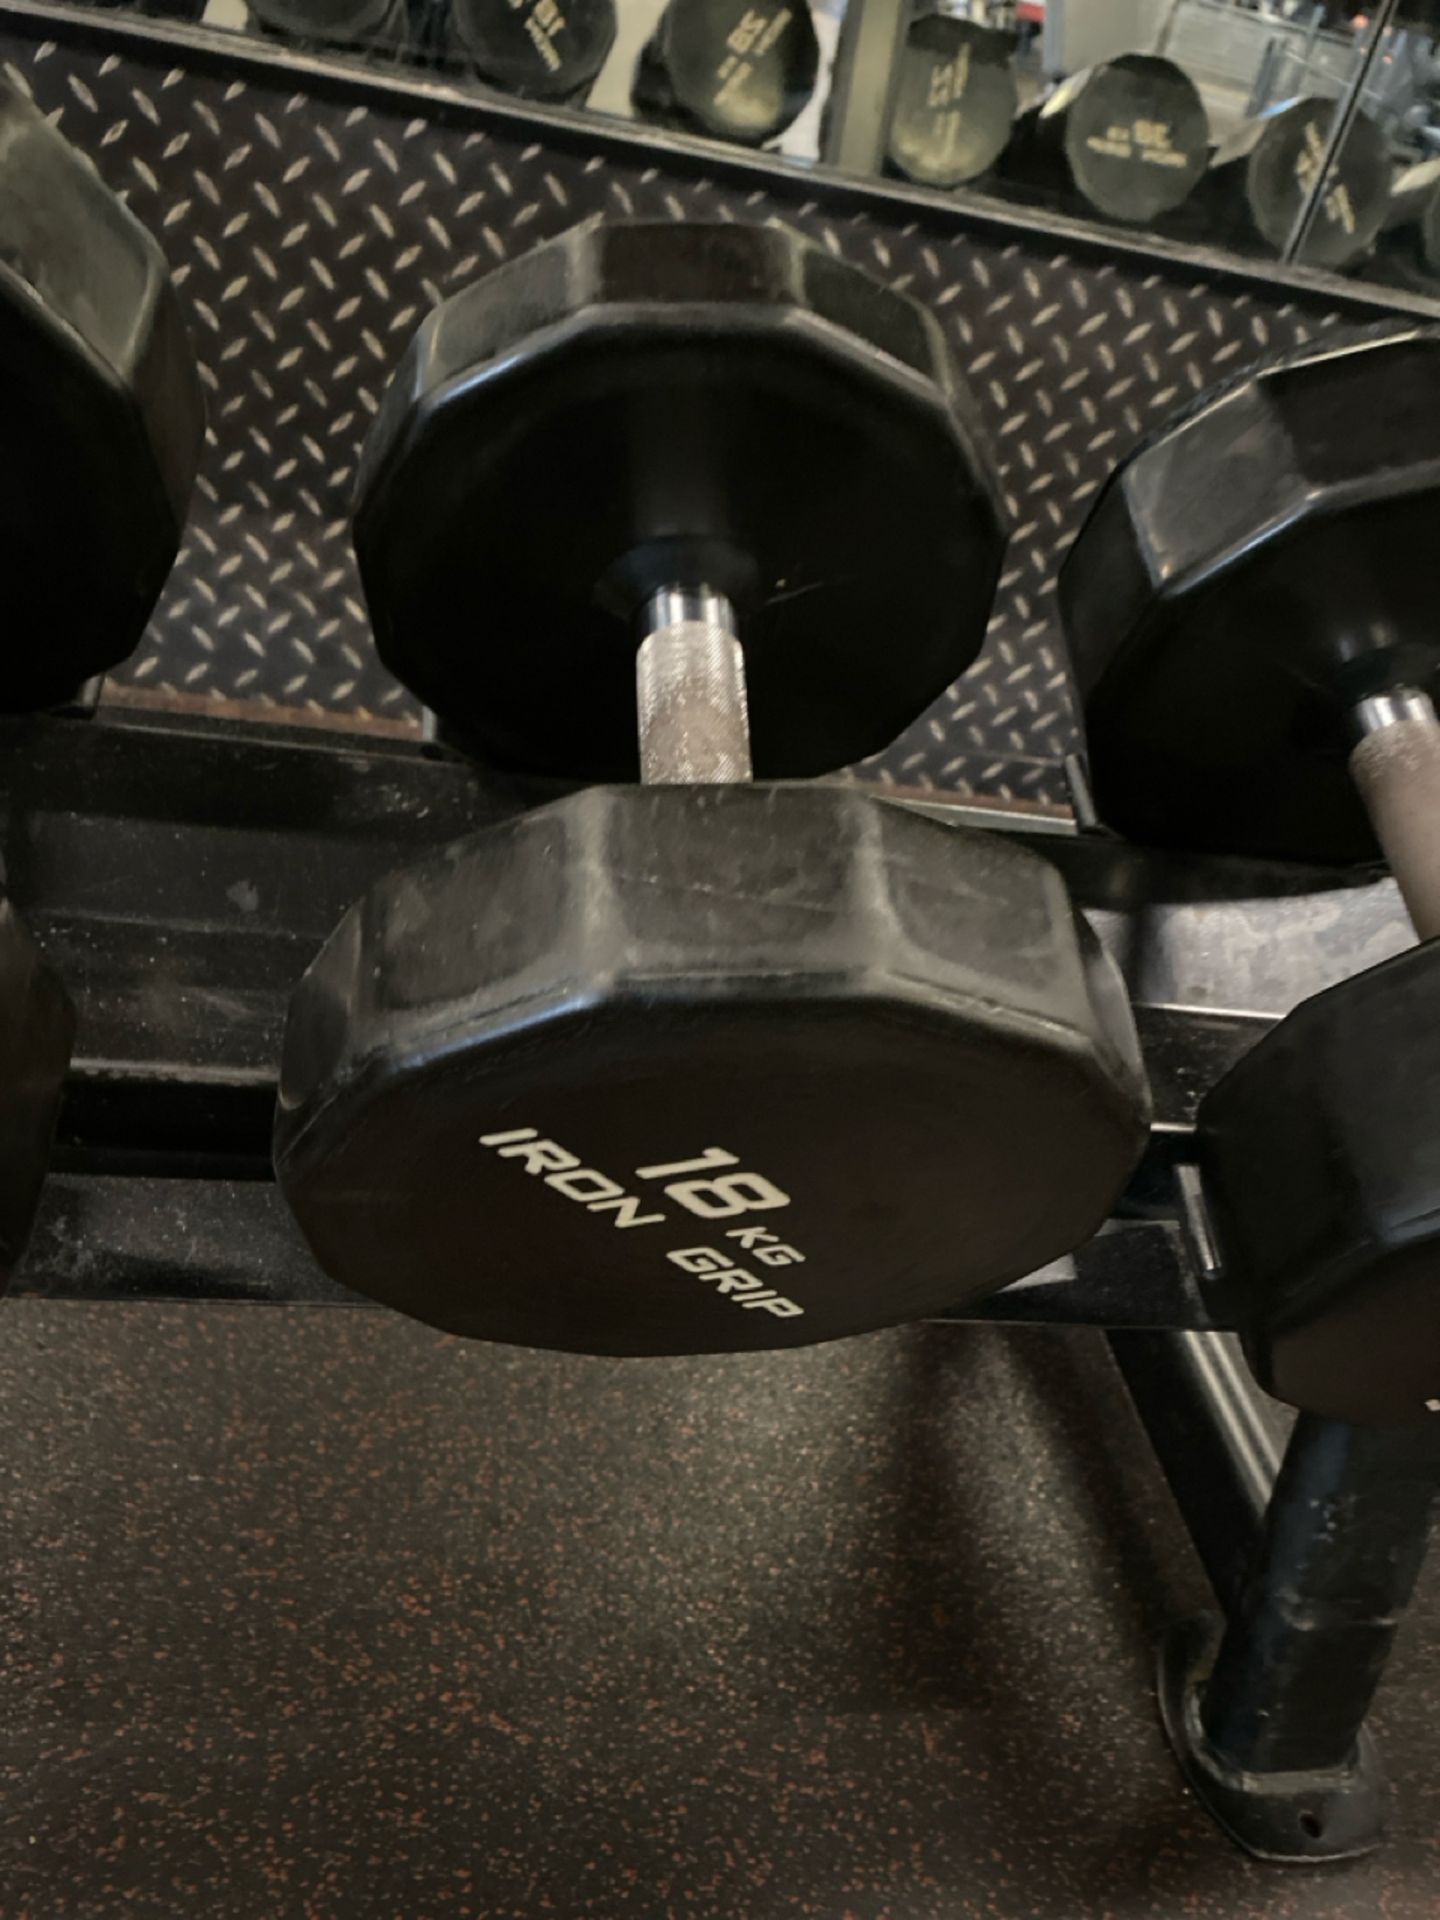 Iron Grip Dumbell Set 14kg, 16kg, 18kg - Image 4 of 5